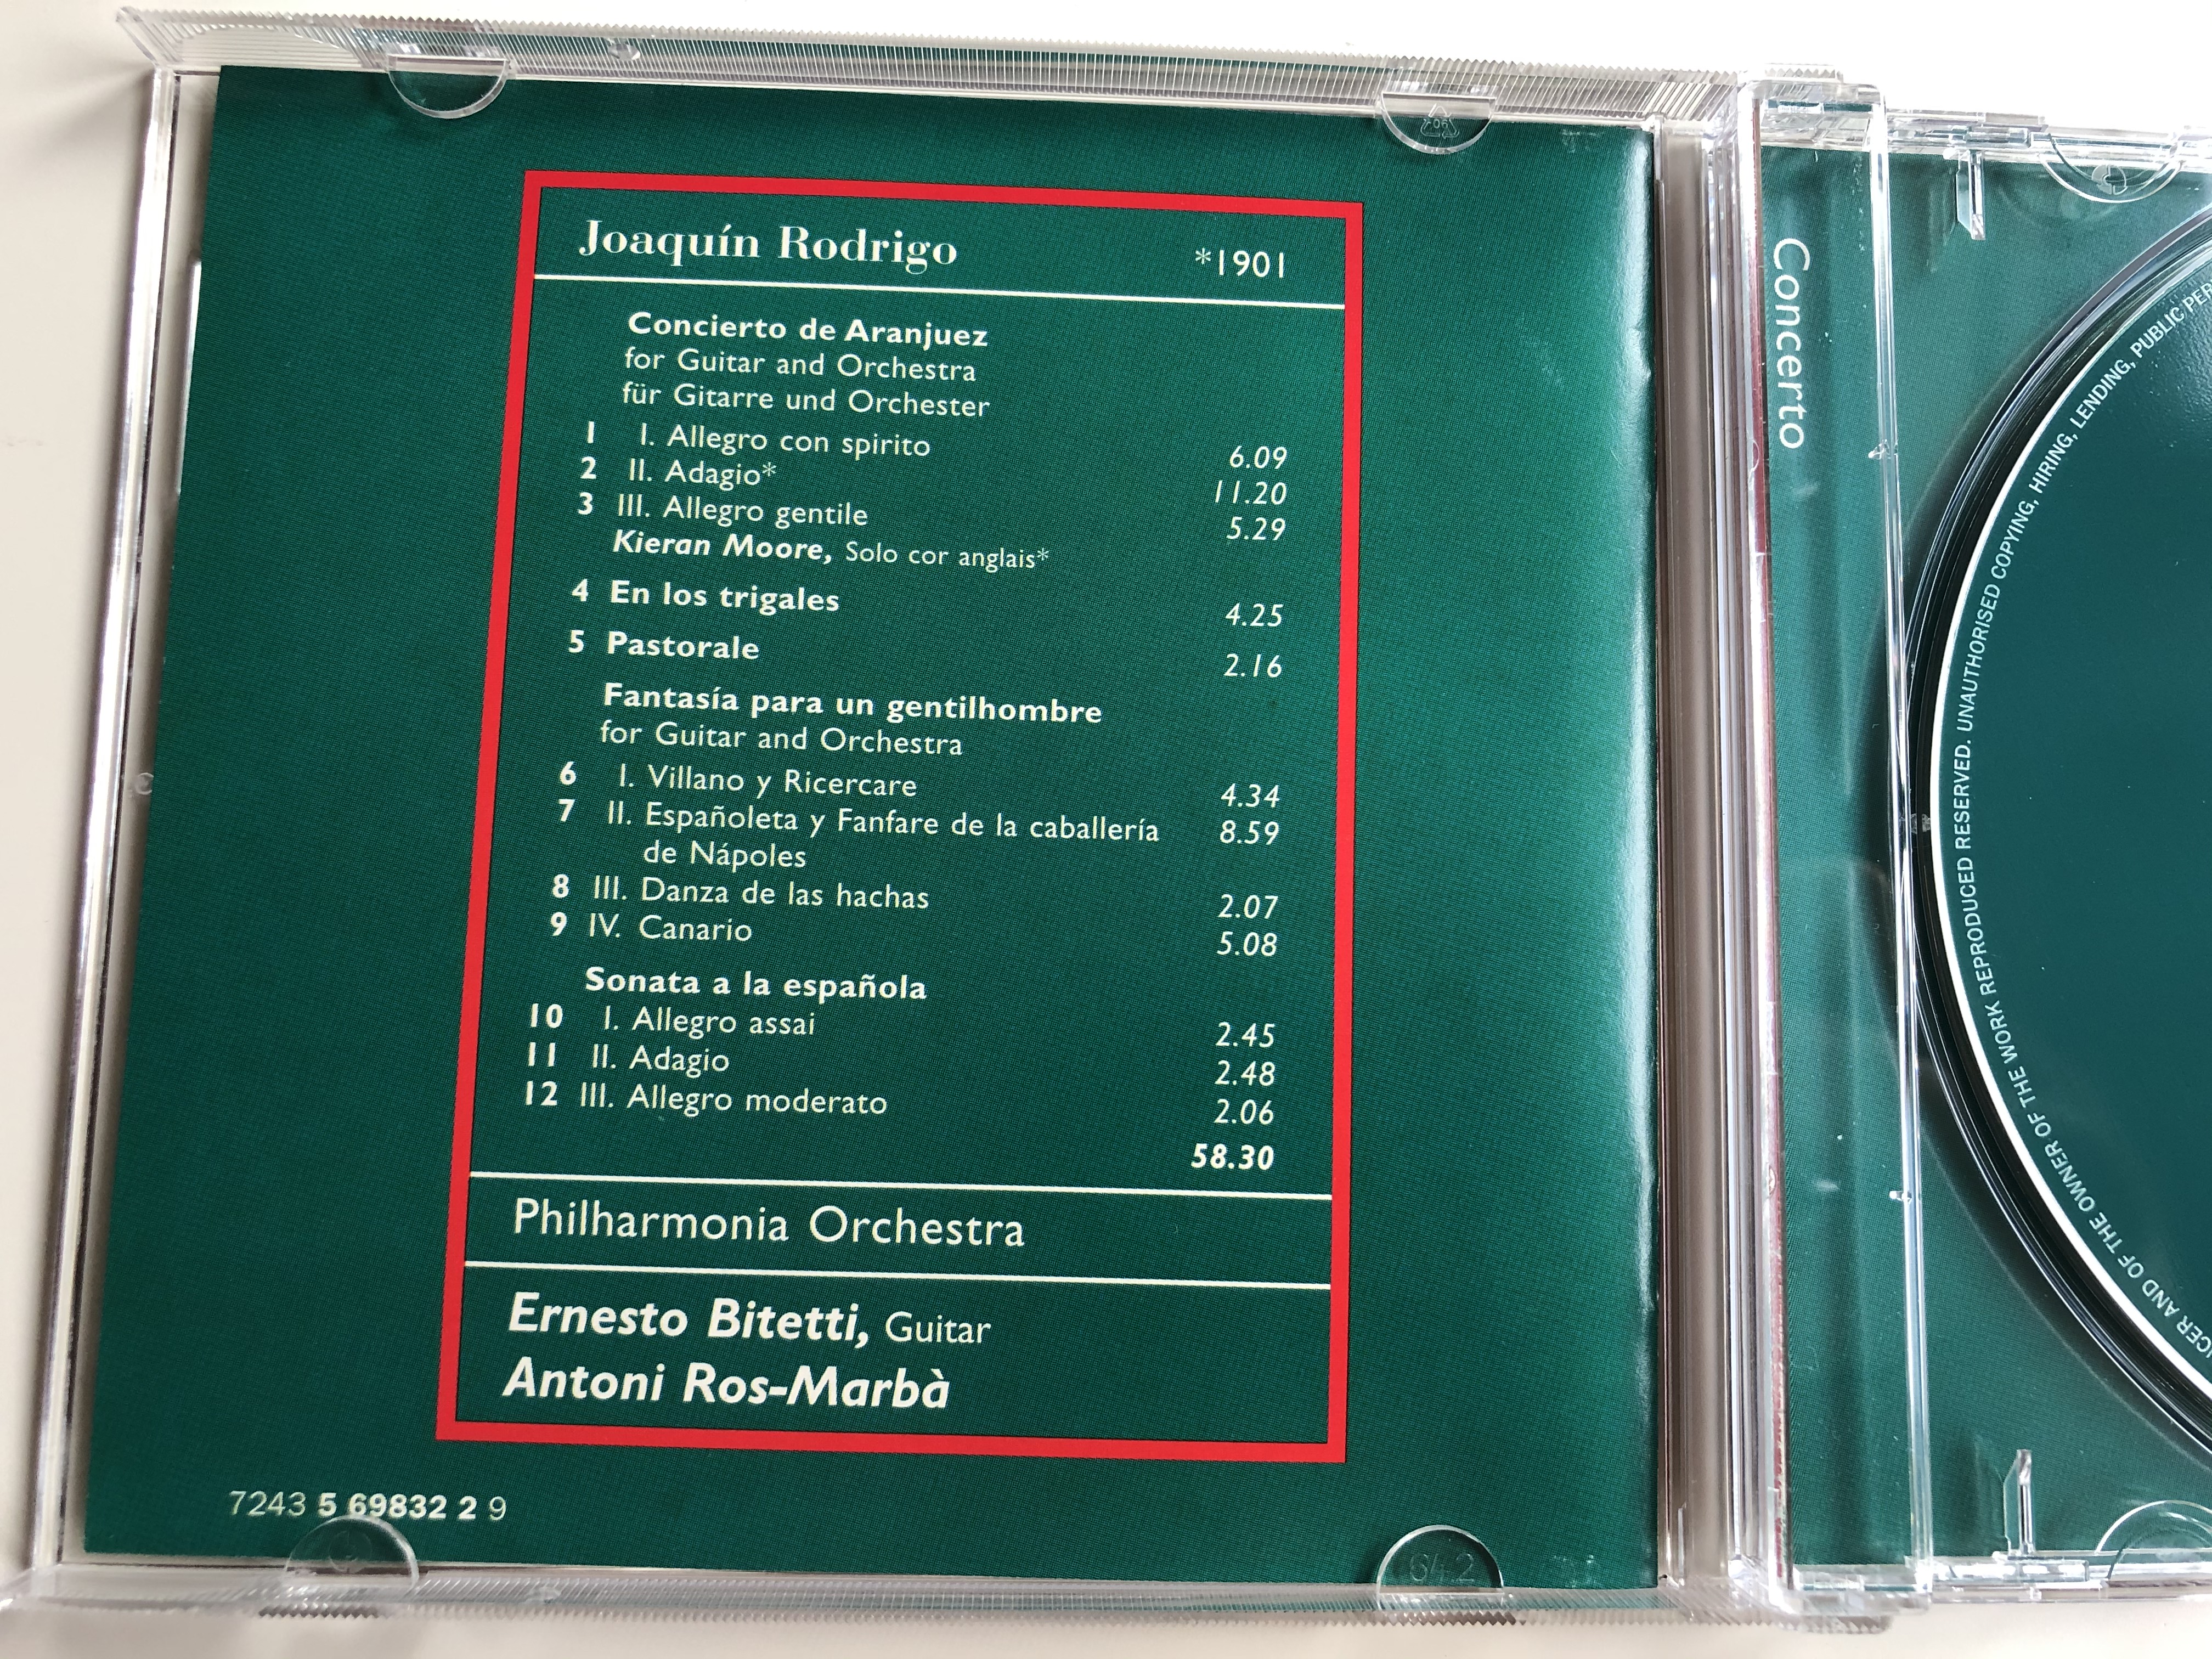 joaquin-rodrigo-1905-concierto-de-aranjuez-fantasia-para-un-gentilhombre-philharmonia-orchestra-ernesto-bitetti-antoni-ros-marba-emi-classics-audio-cd-1997-stereo-7243-5-69832-2-9.jpg